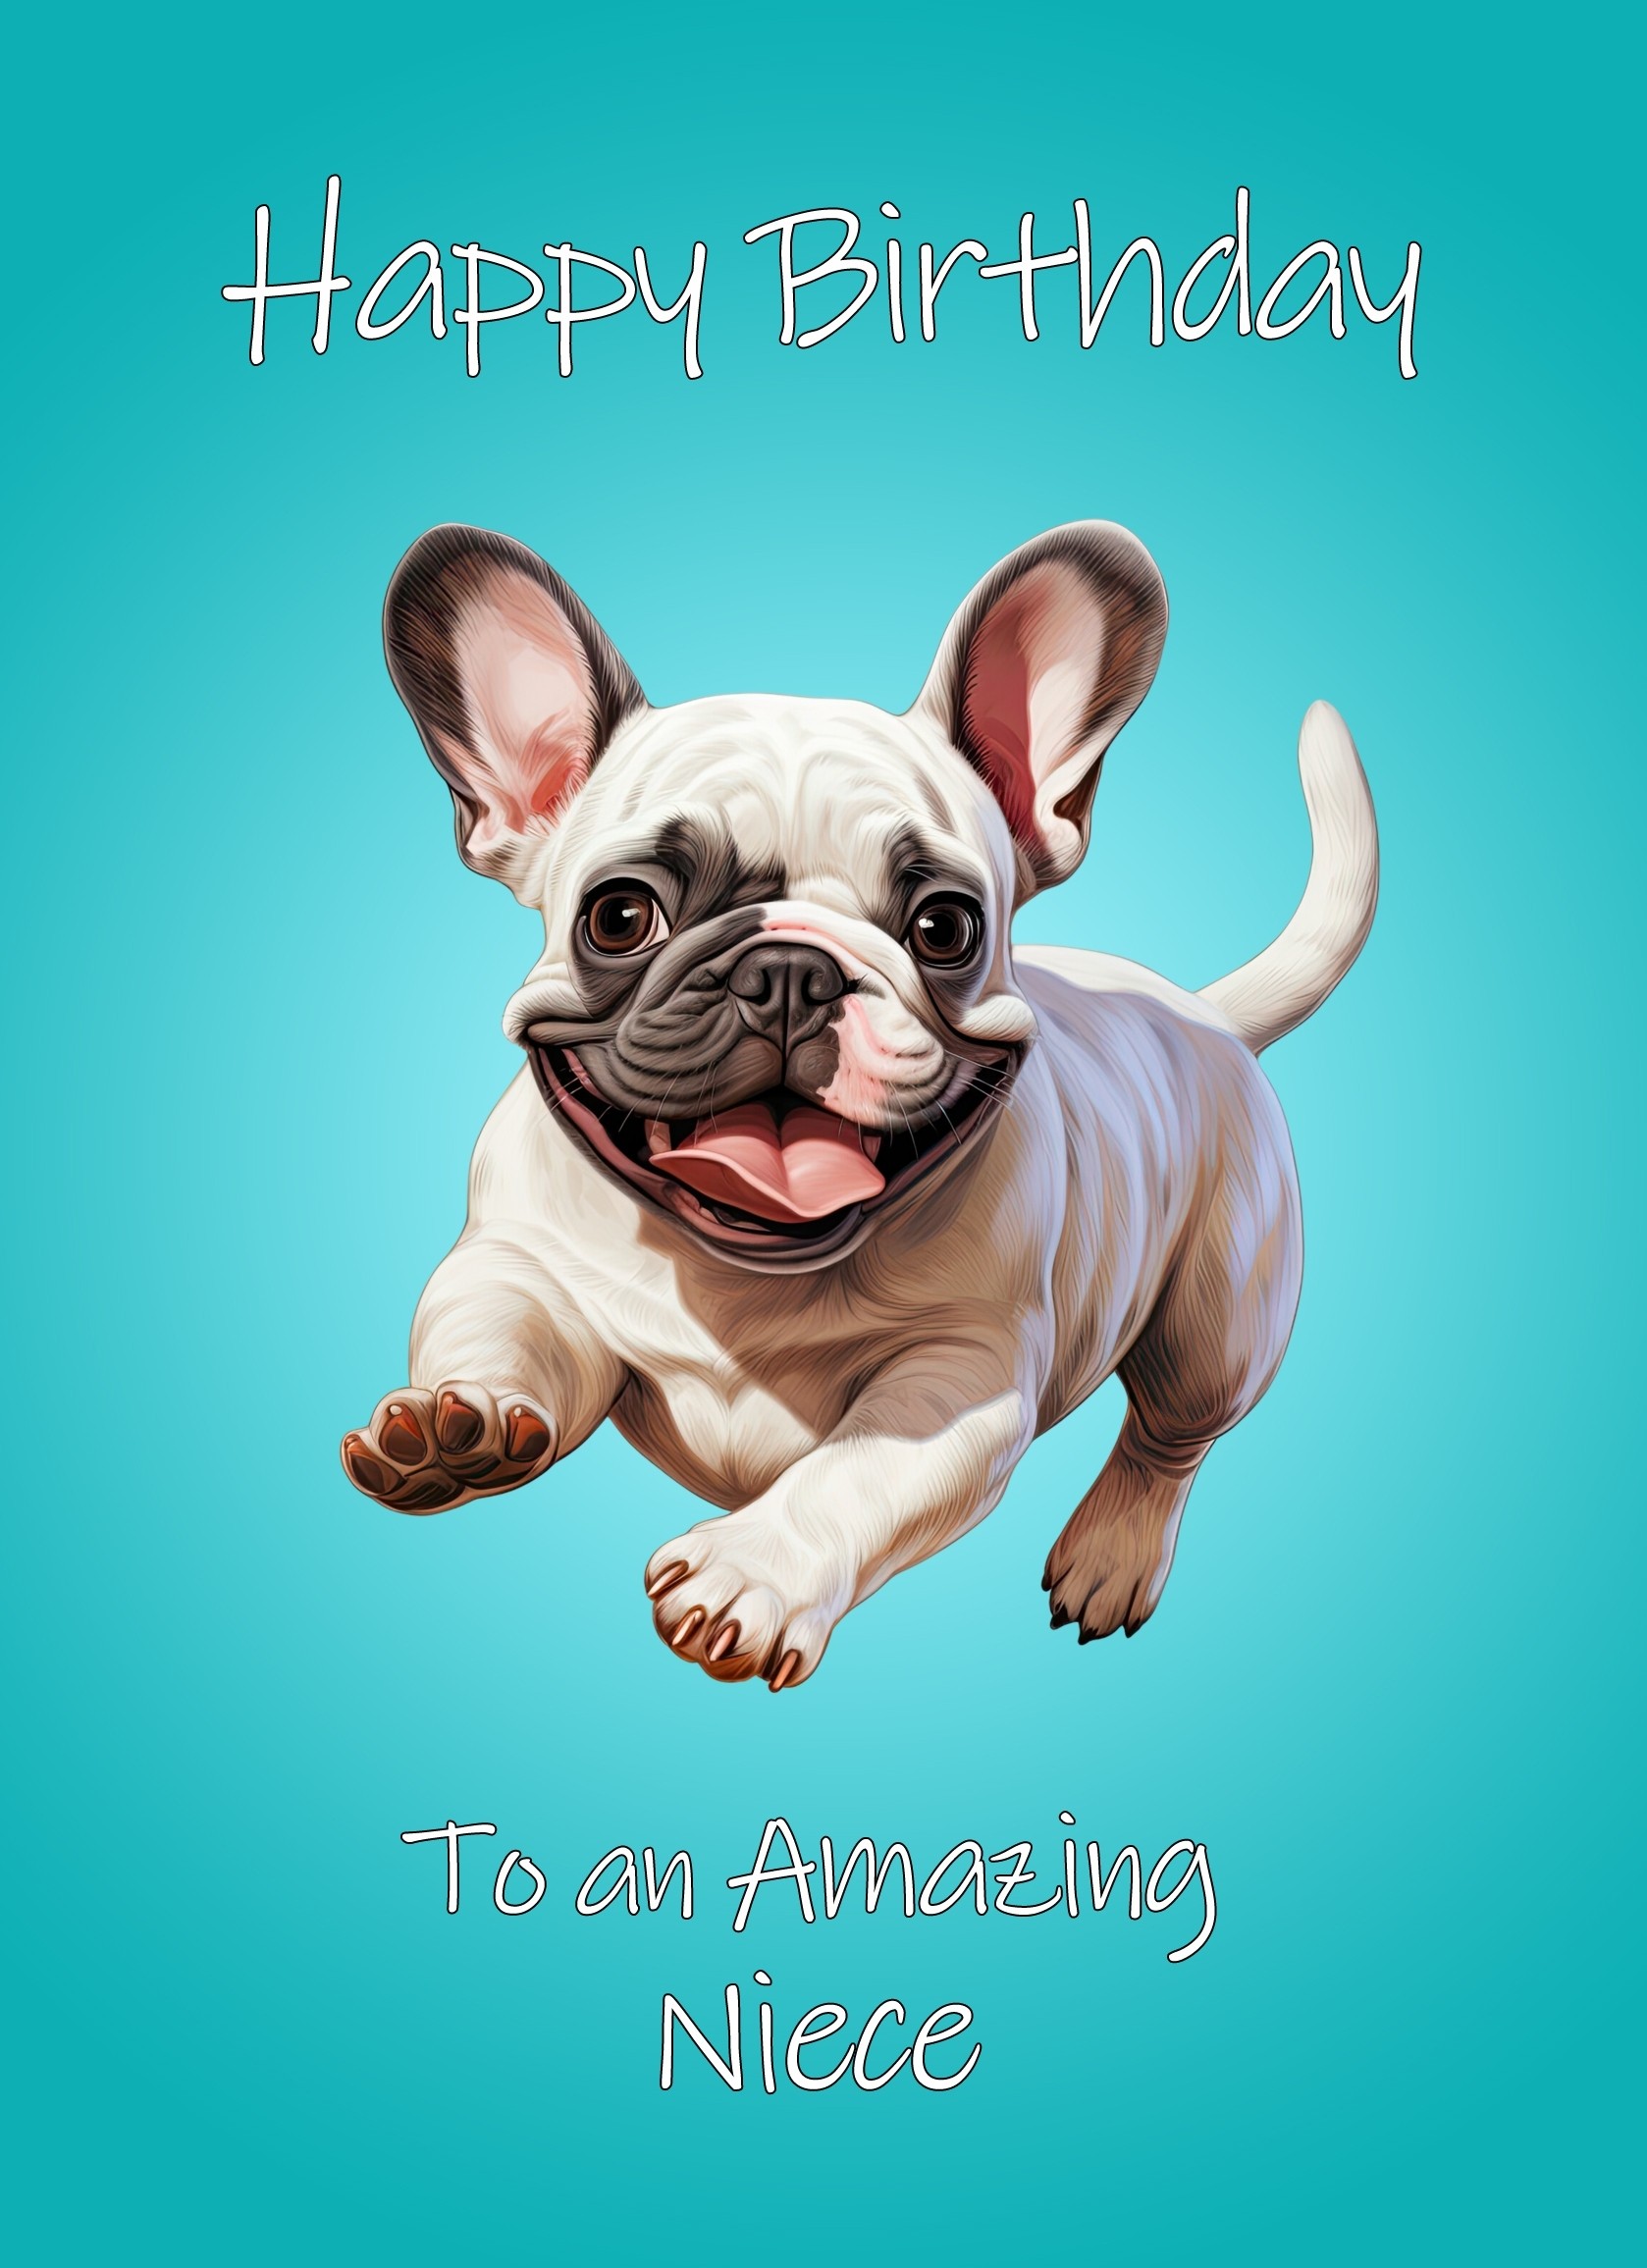 French Bulldog Dog Birthday Card For Niece